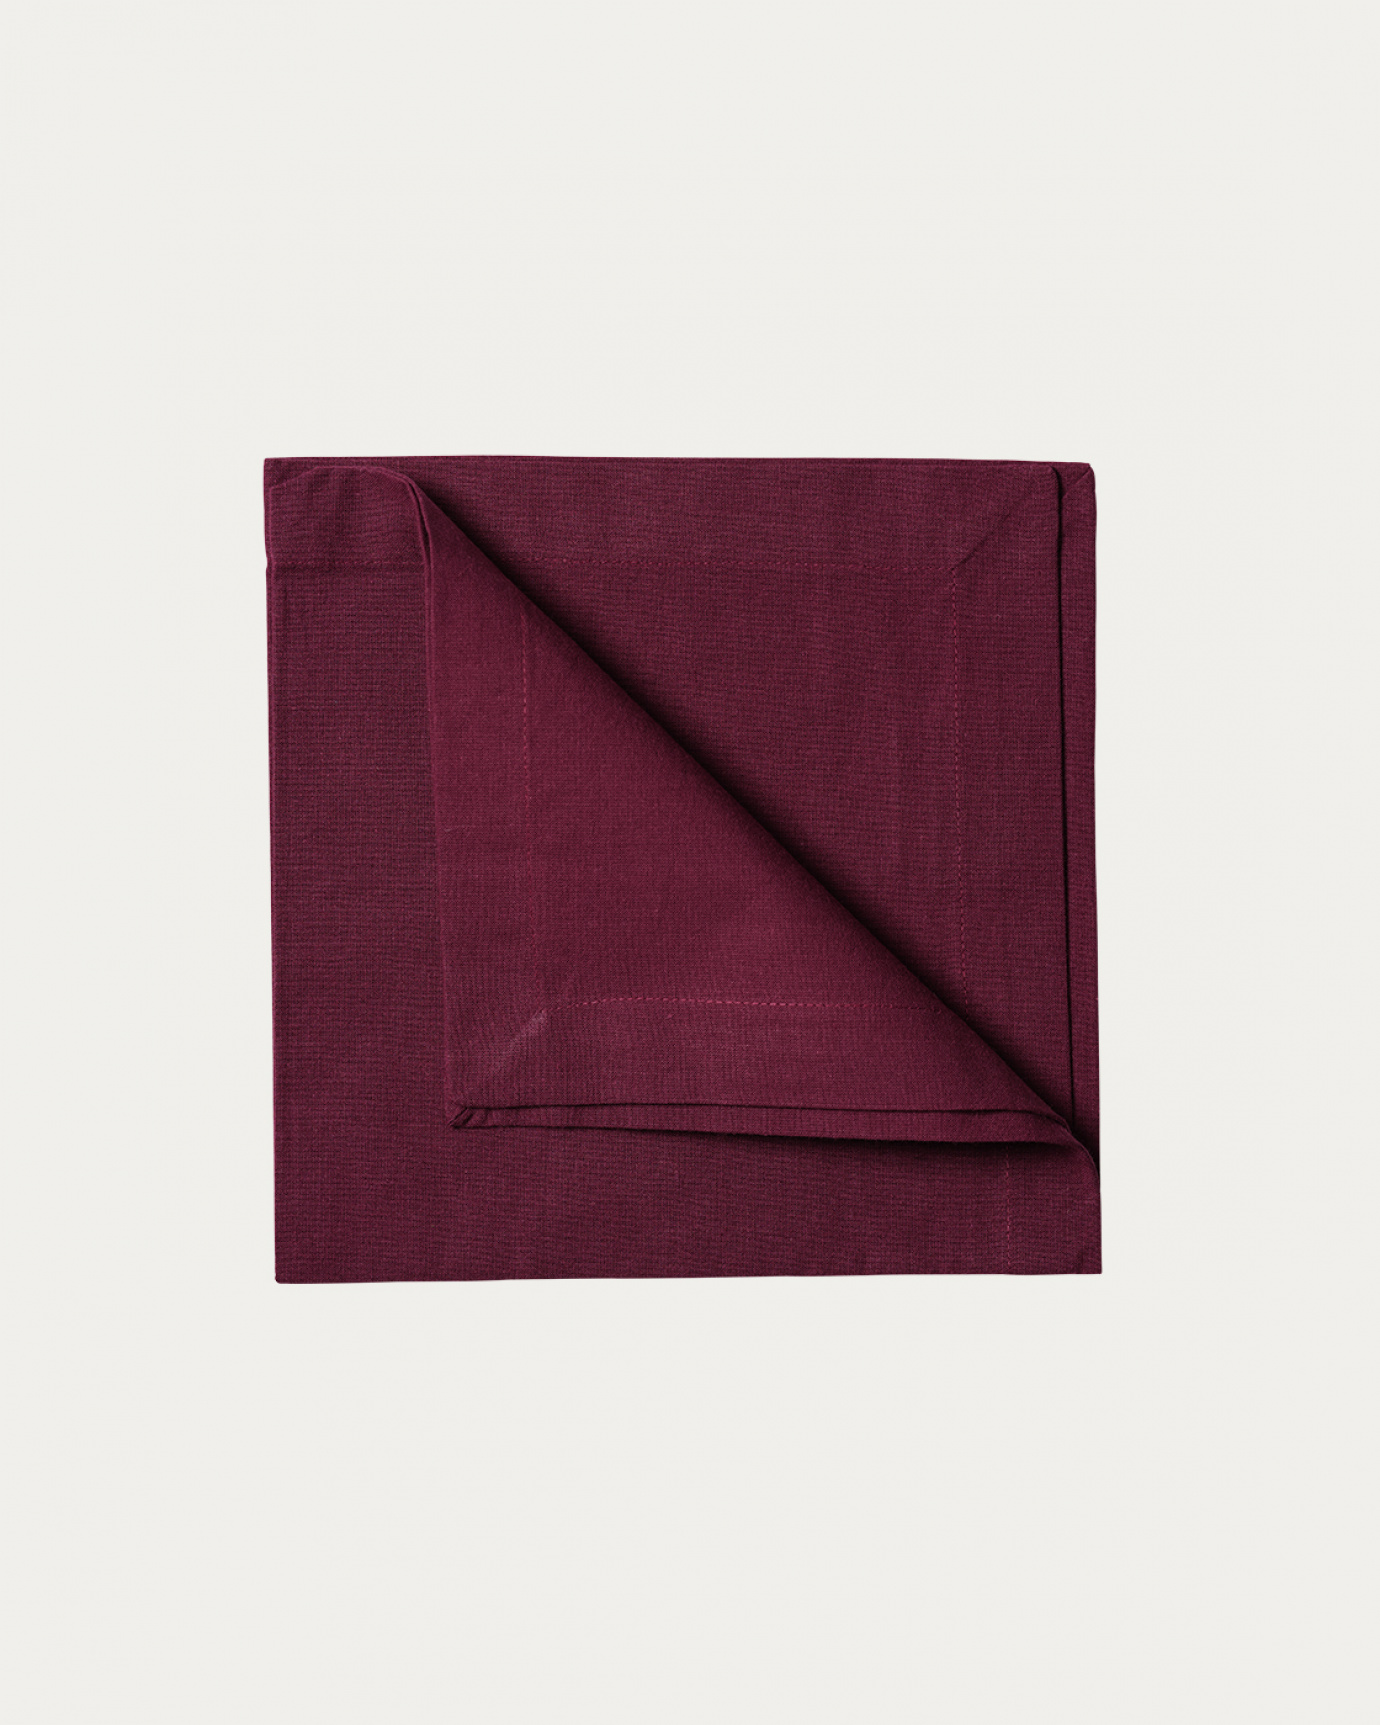 Produktbild burgundyröd ROBERT servett av mjuk bomull från LINUM DESIGN. Storlek 45x45 cm och säljs i 4 pack.